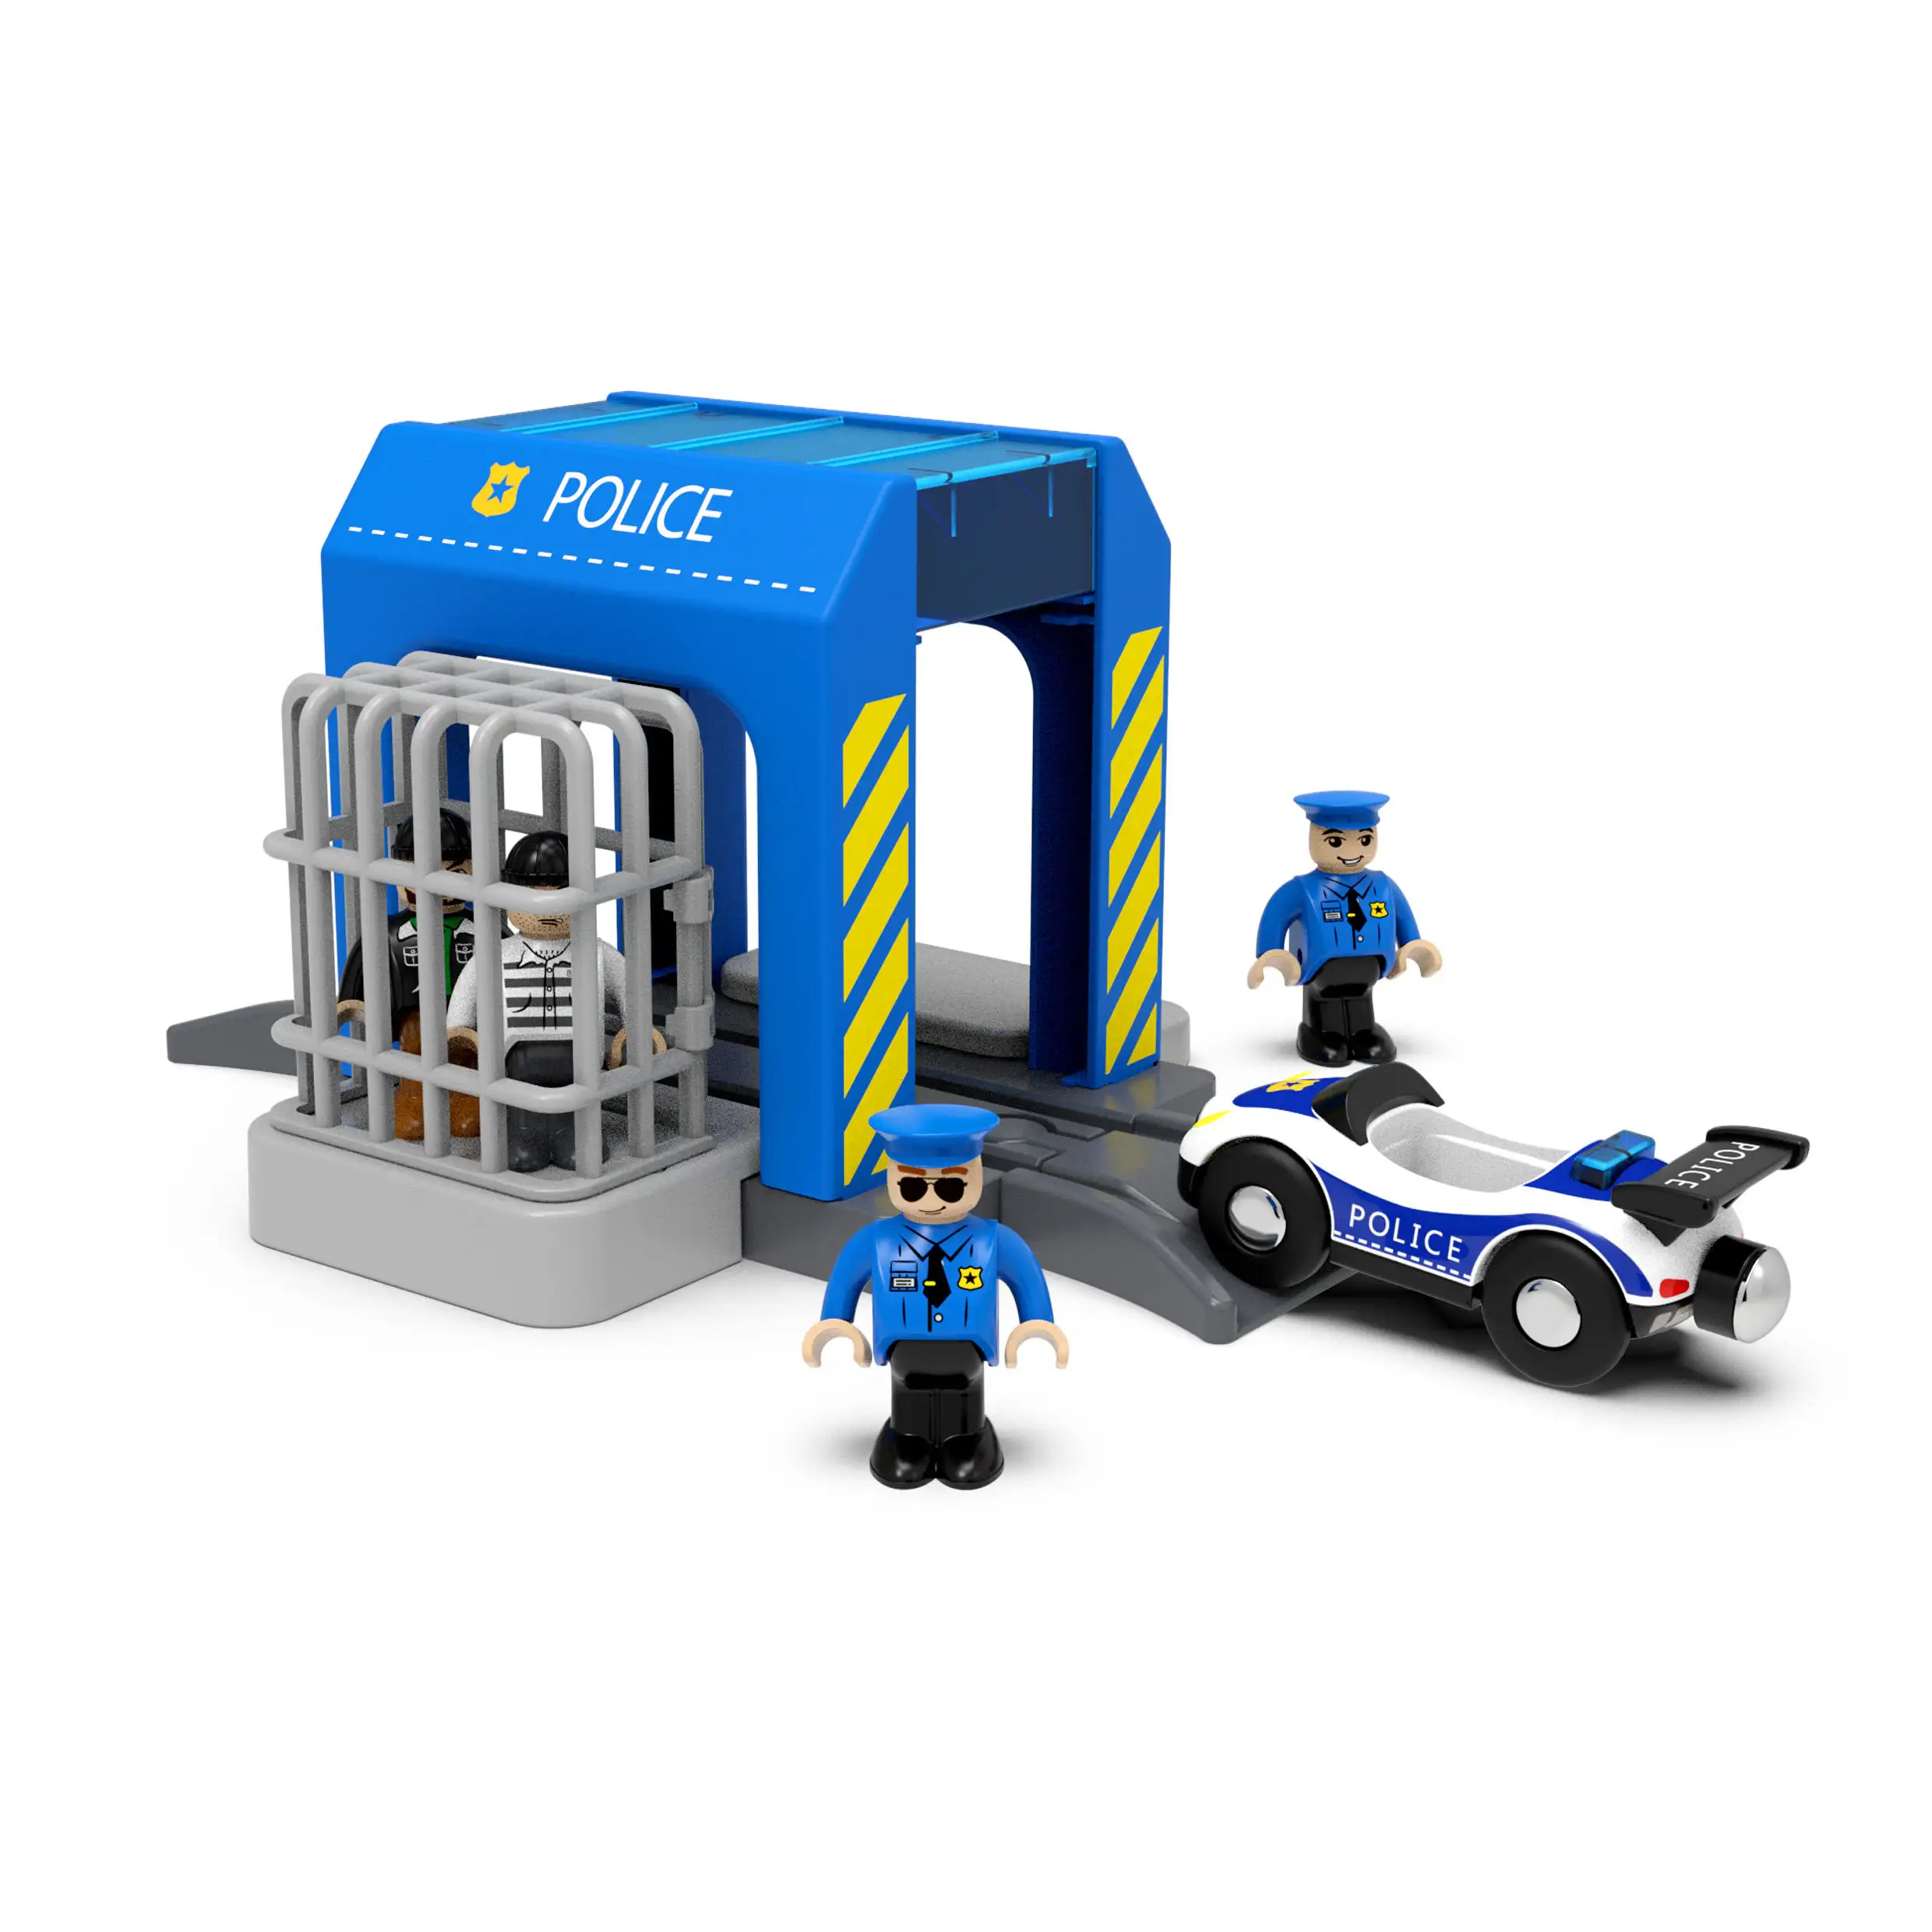 चुंबकीय पुलिस कार श्रृंखला विस्तार सहायक उपकरण शामिल हैं जो लकड़ी के ट्रेन पटरियों के खिलौने के साथ संगत हैं।